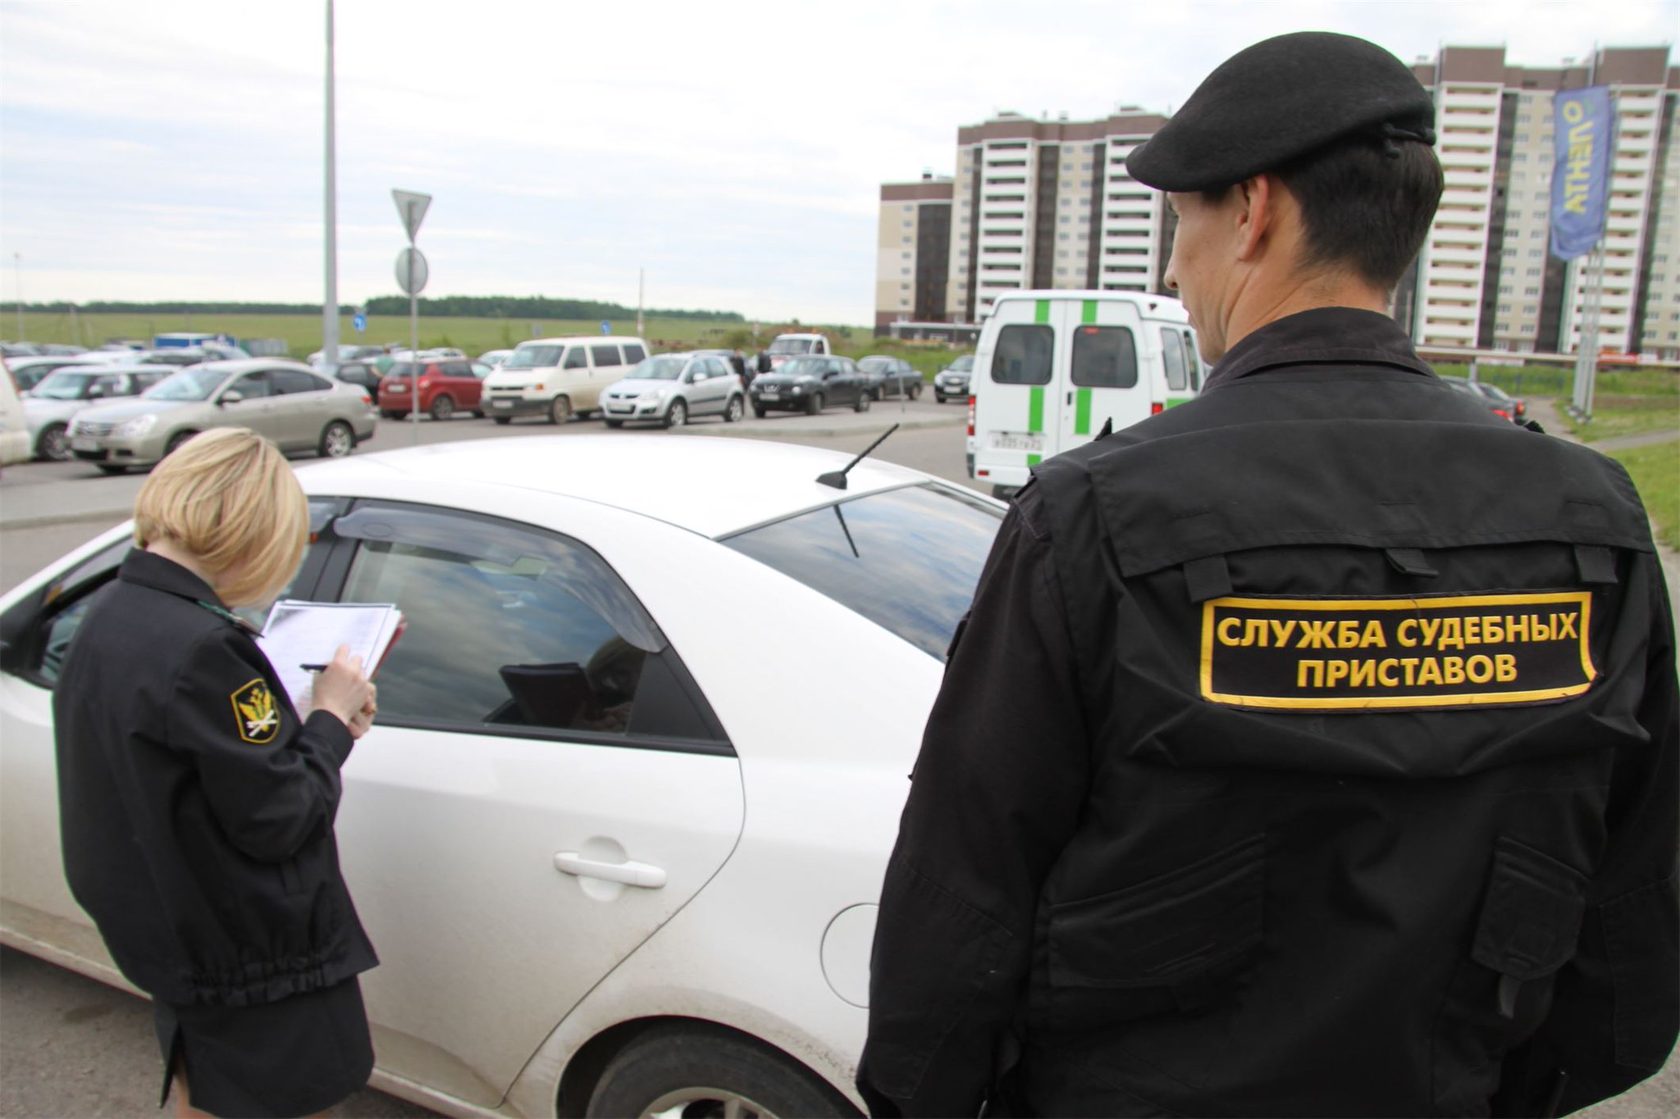 Как избежать наложения ареста на ваш автомобиль судебными приставами